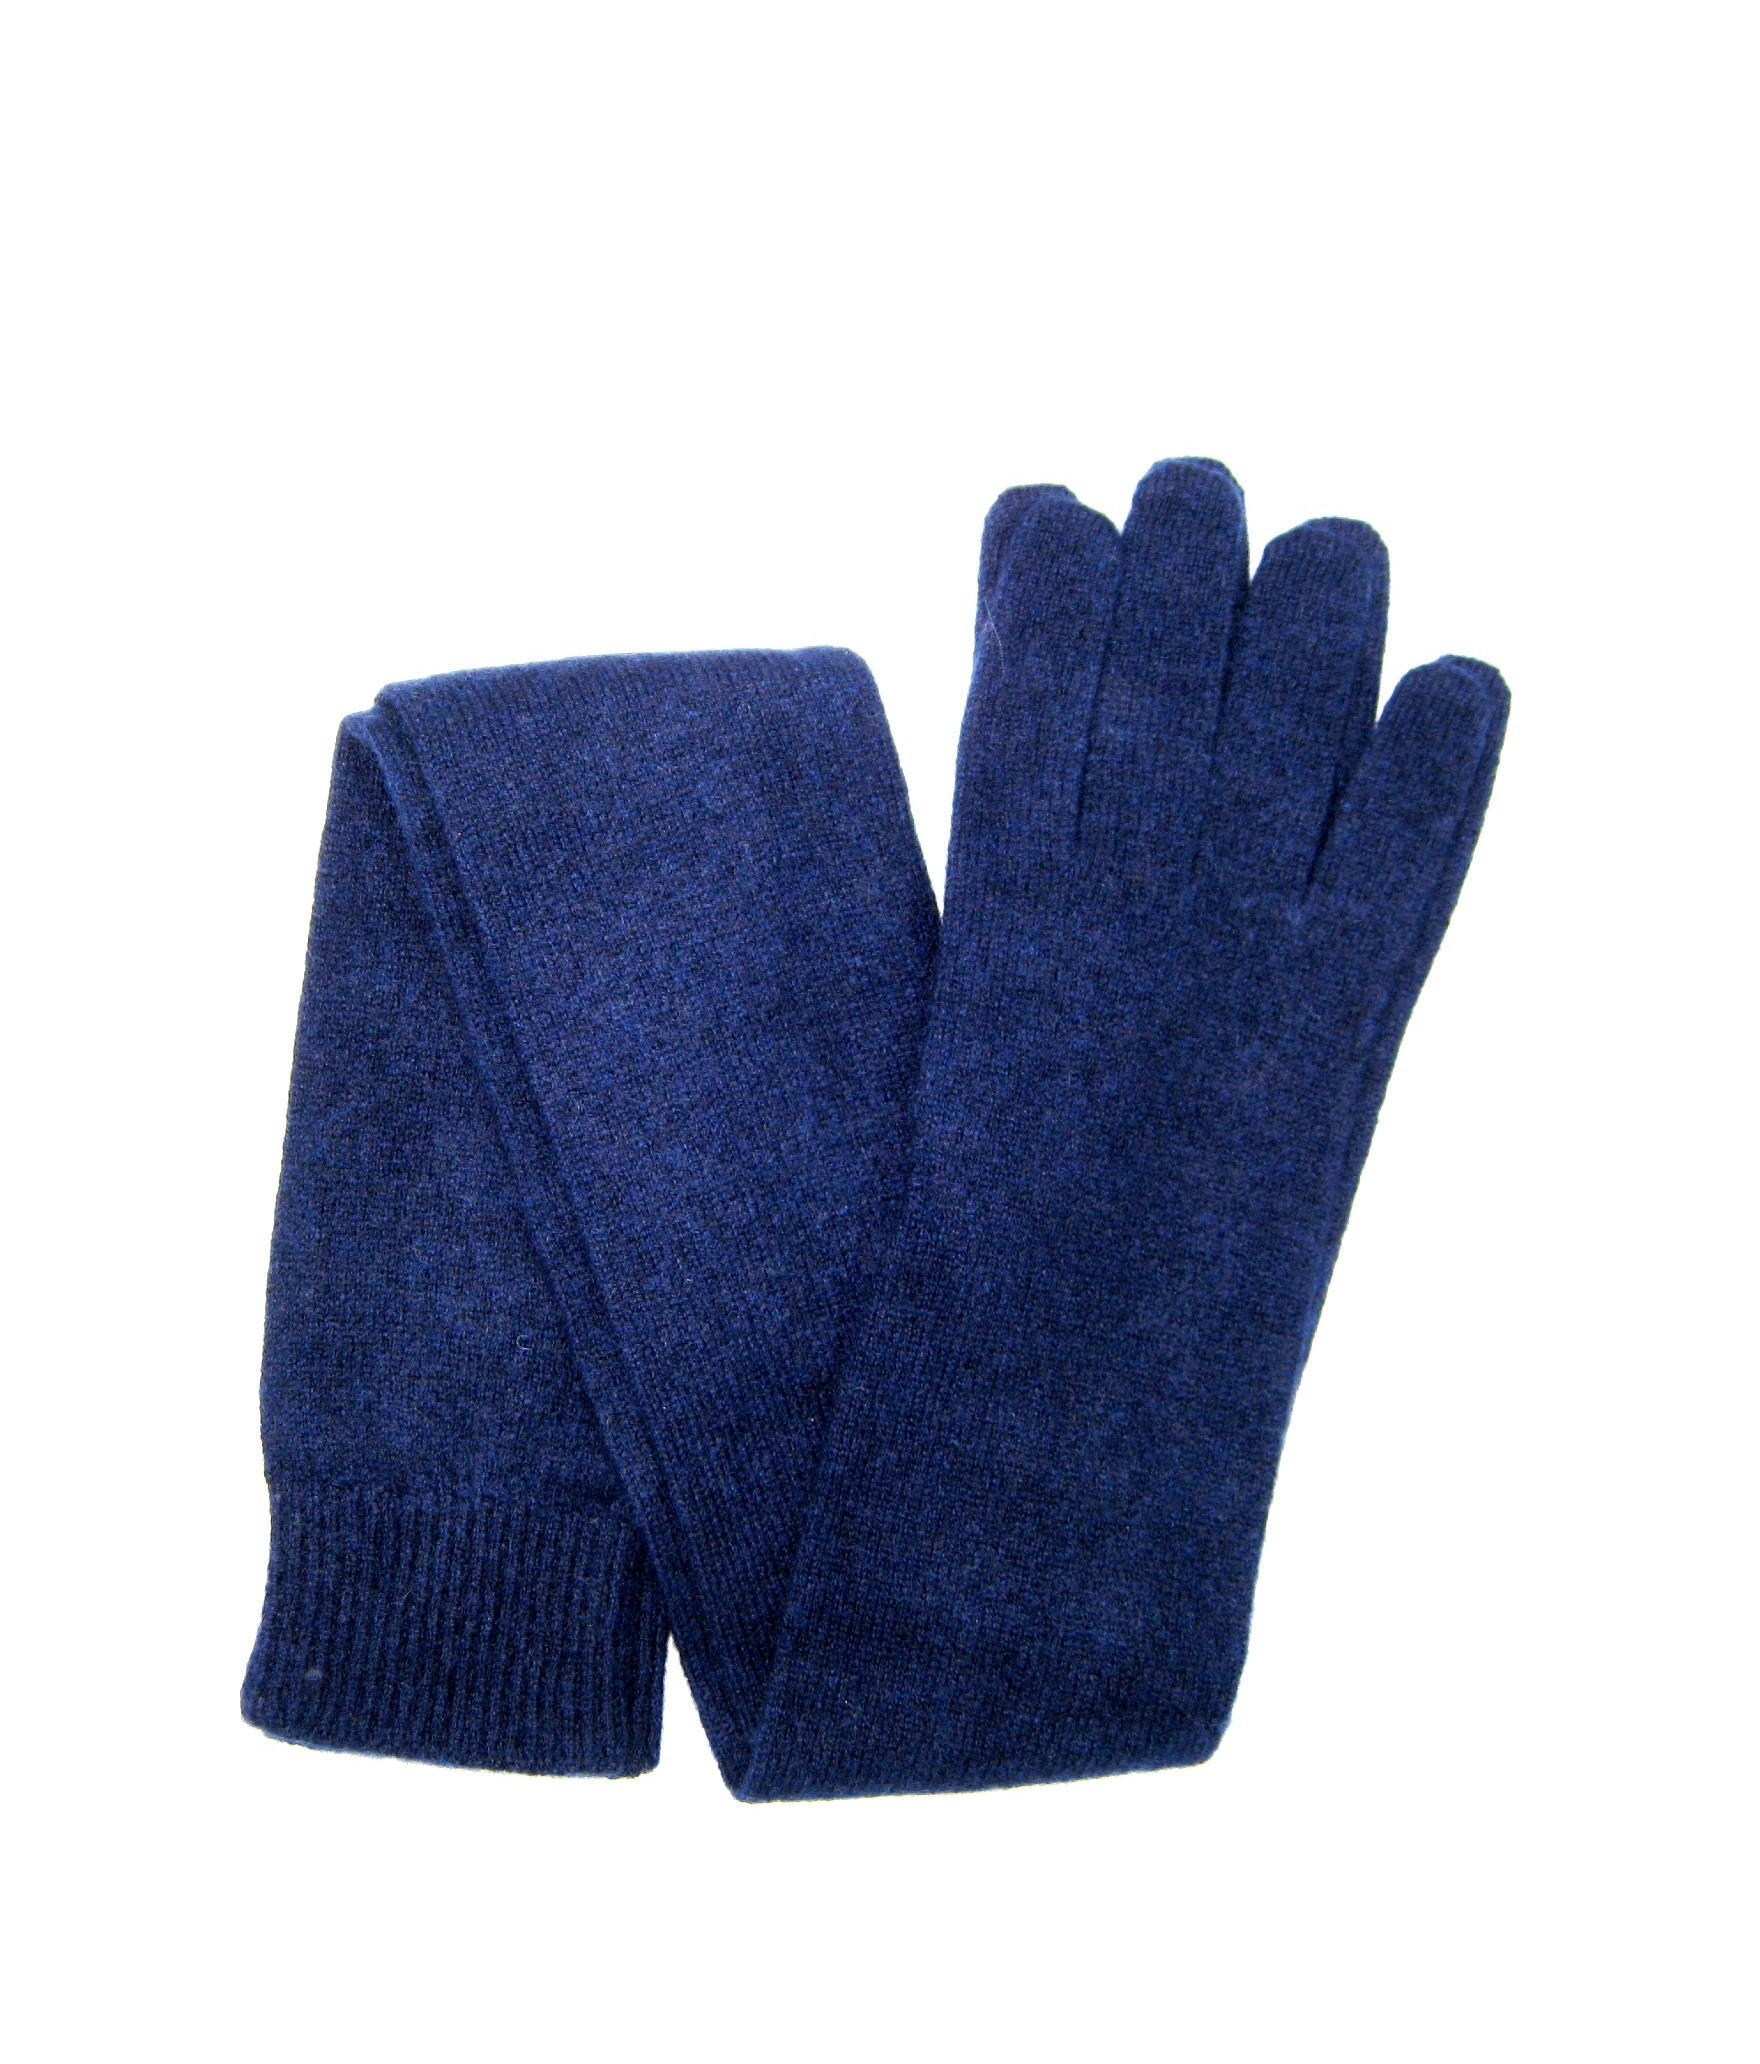 Damen Casual 100% Kaschmir Handschuhe 16bt Blau Sermoneta